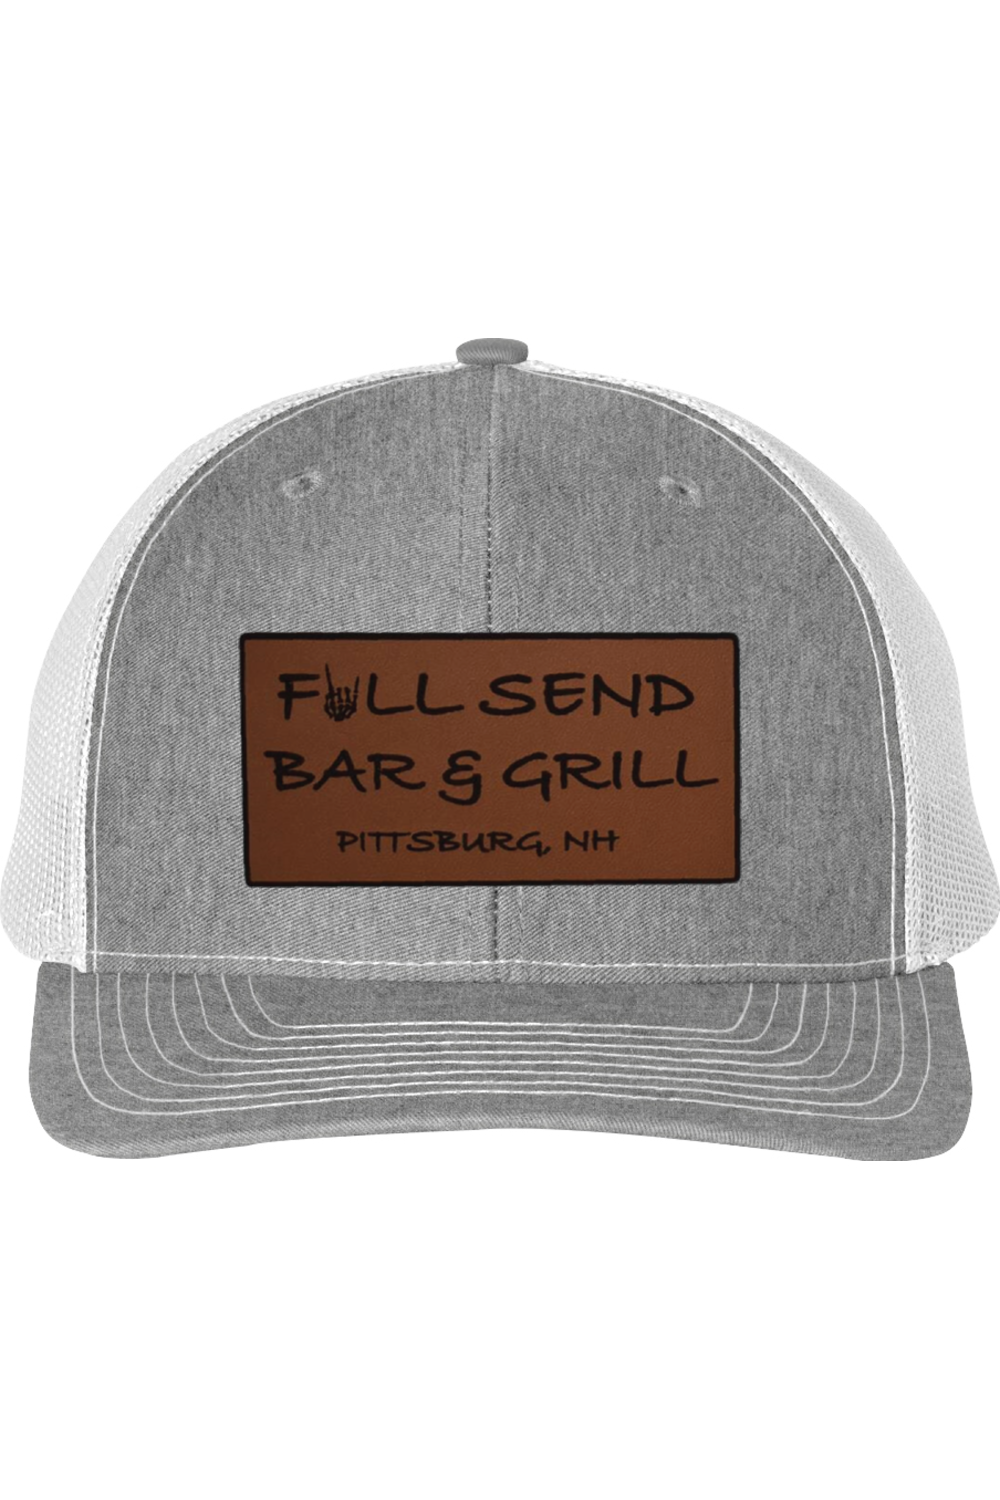 Full Send Bar & Grill Snapback Trucker Cap